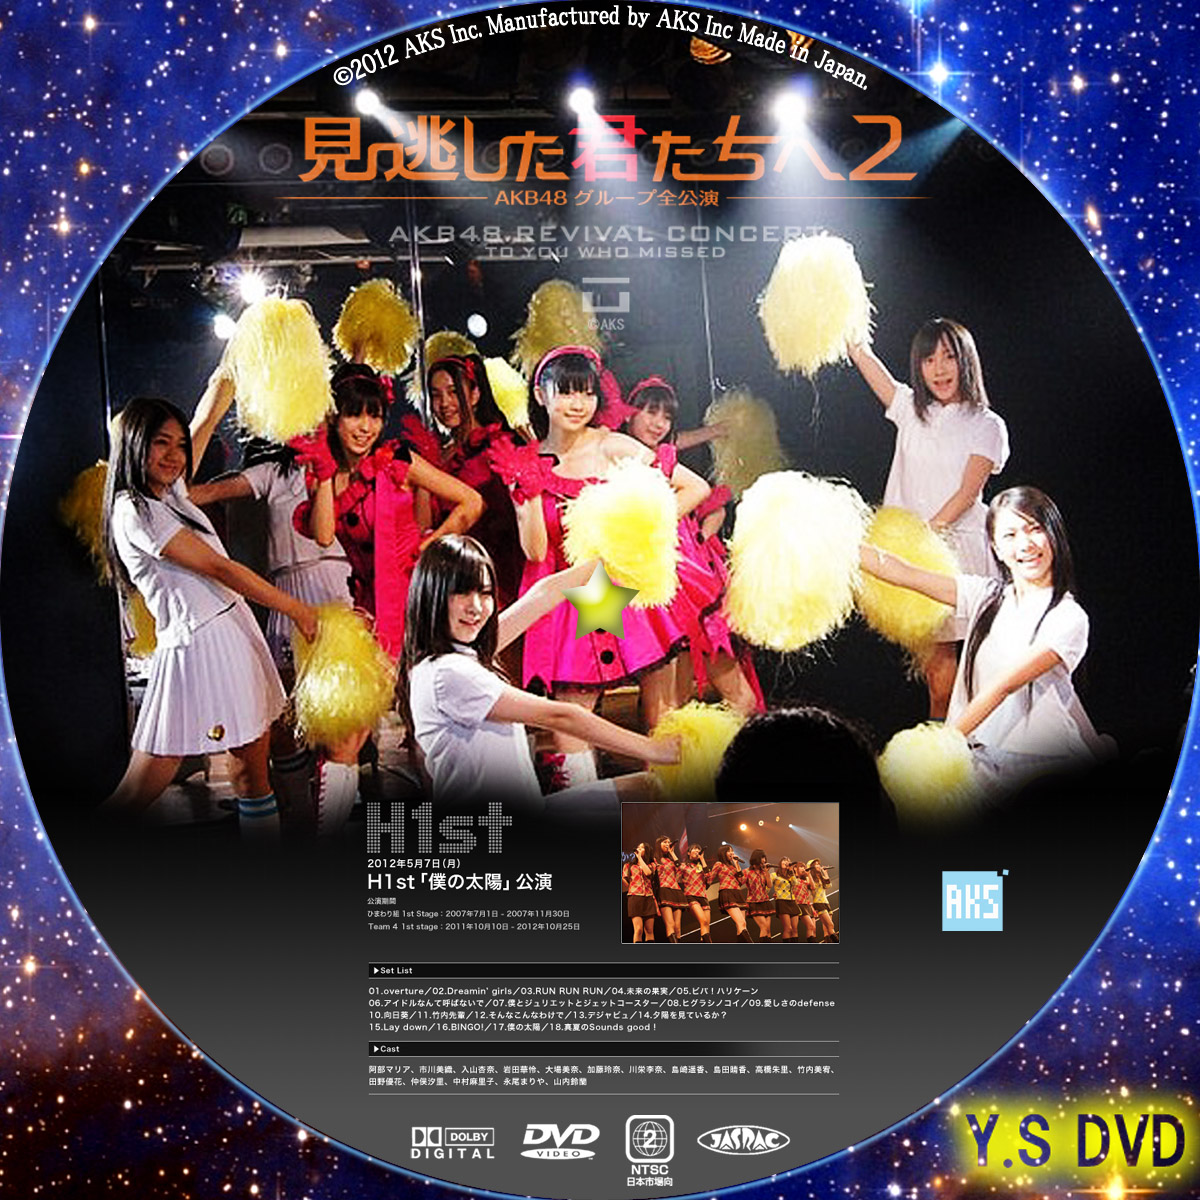 2022新作 DVD AKB48 ひまわり組 1st stage 僕の太陽 cerkafor.com